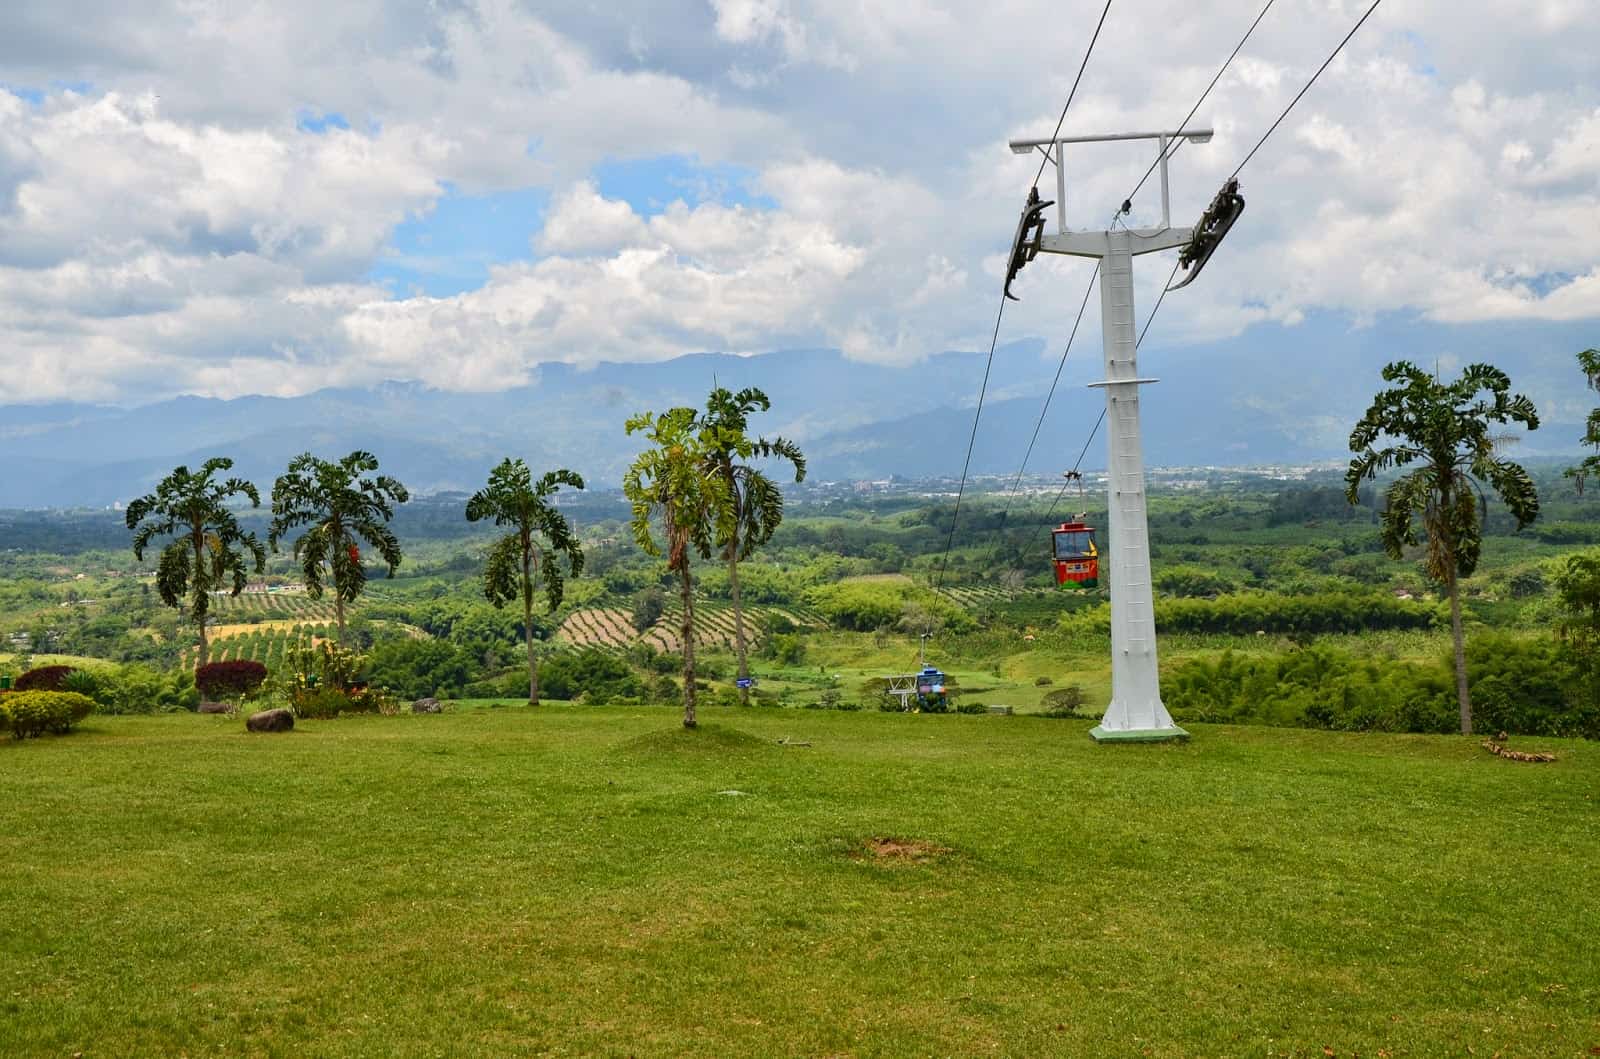 Cable car at Parque Nacional del Café in Quindío, Colombia